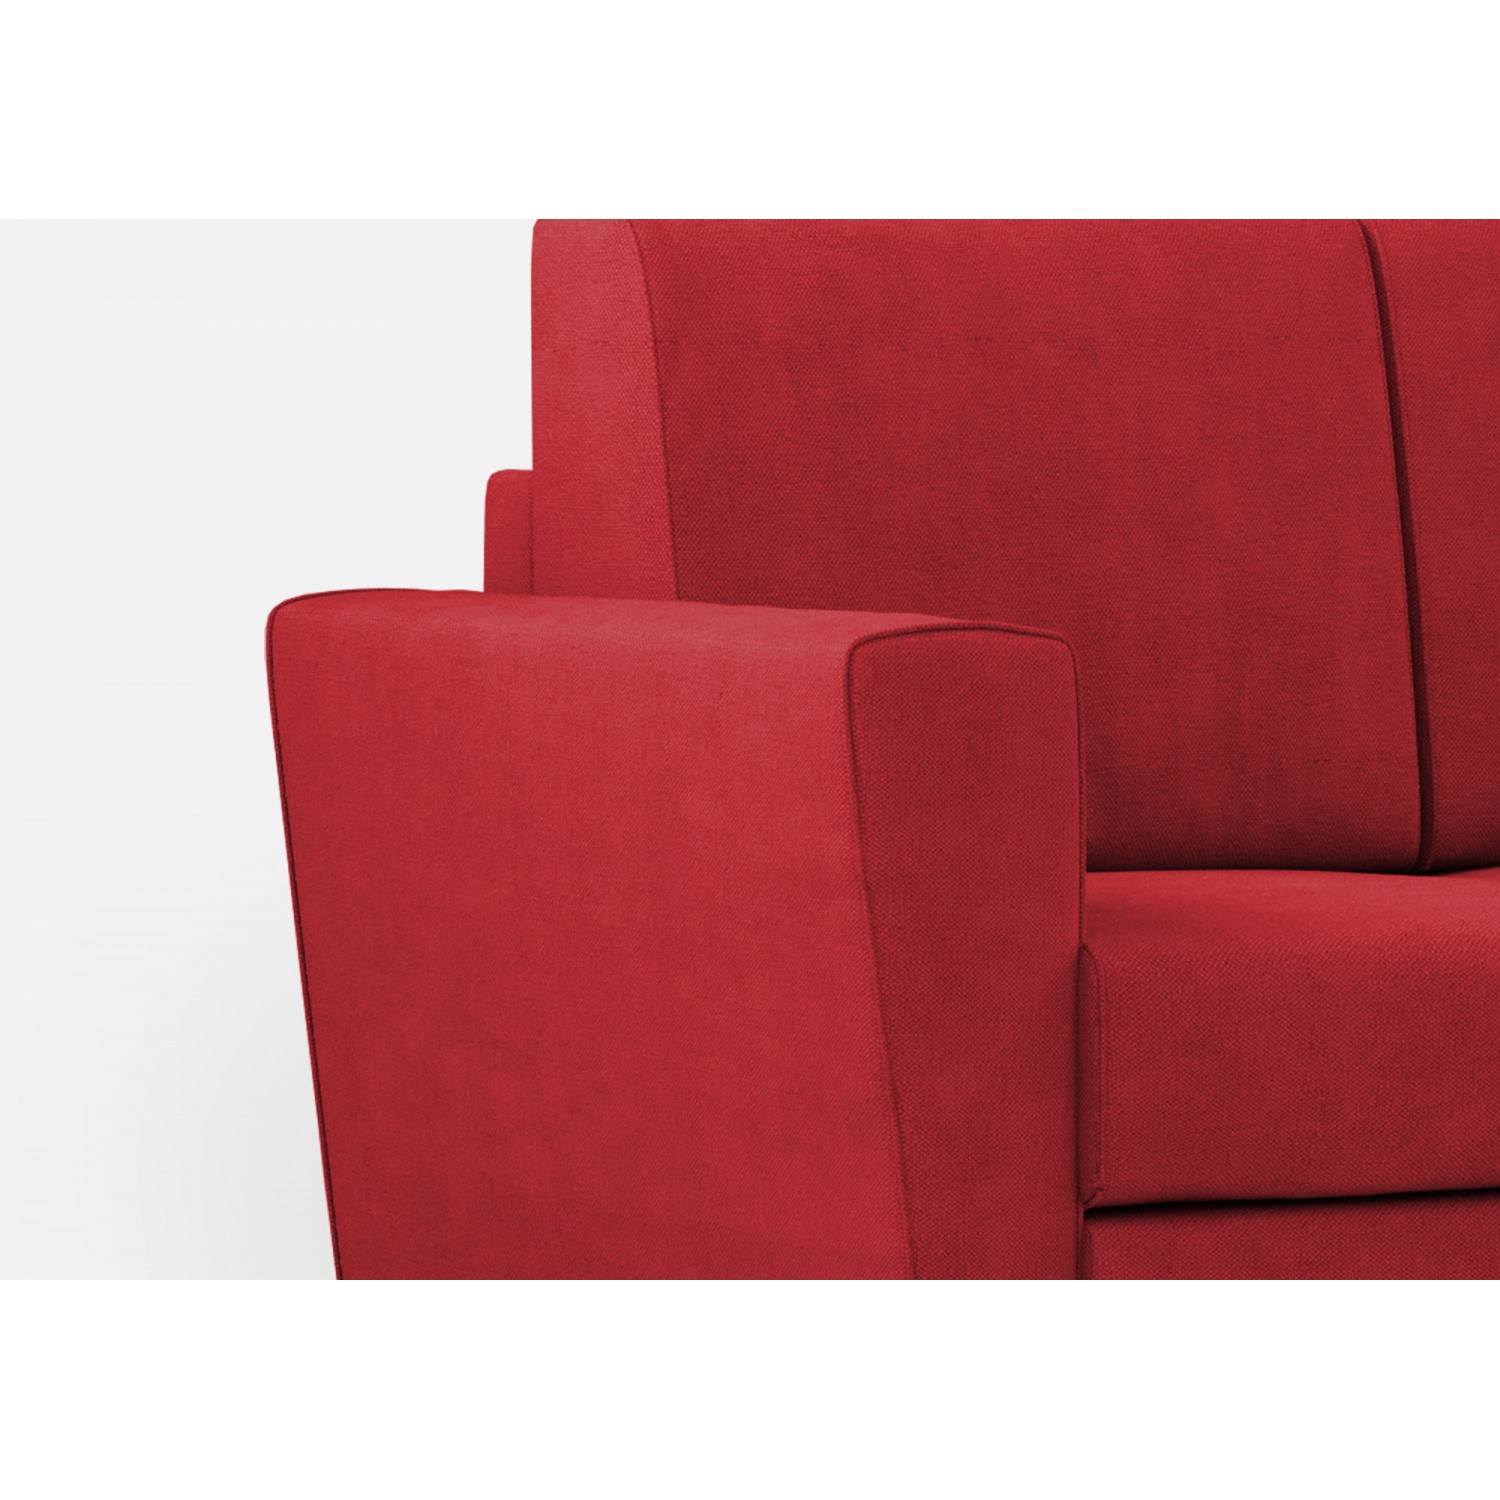 Ityhome Divano Yasel 3 posti (tre sedute da 60cm) + pouf misure esterne L.212 P.155 colore rosso